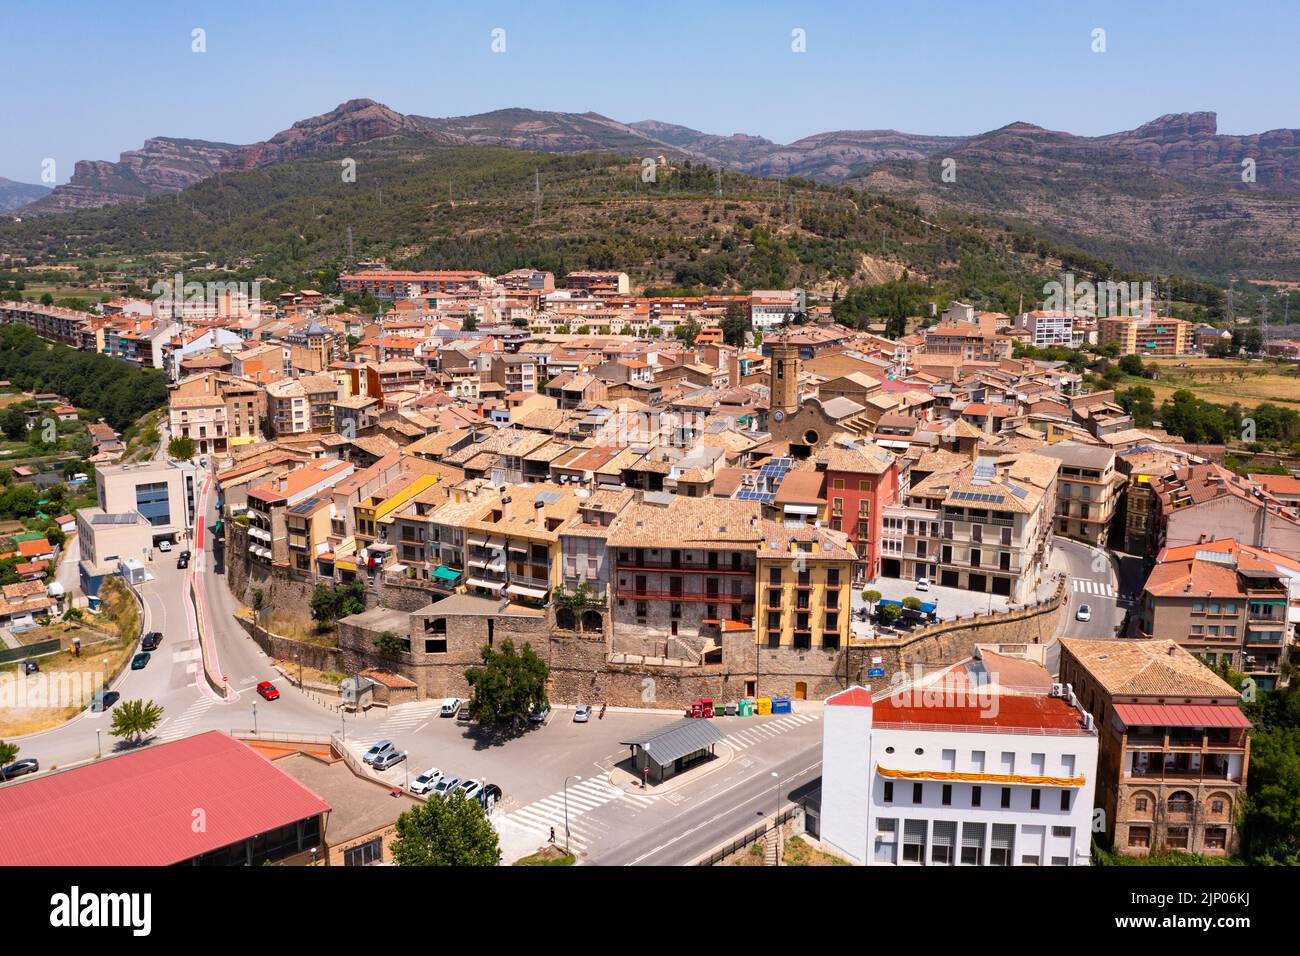 Aerial photo of La Pobla de Segur, province of Lleida, Spain Stock Photo